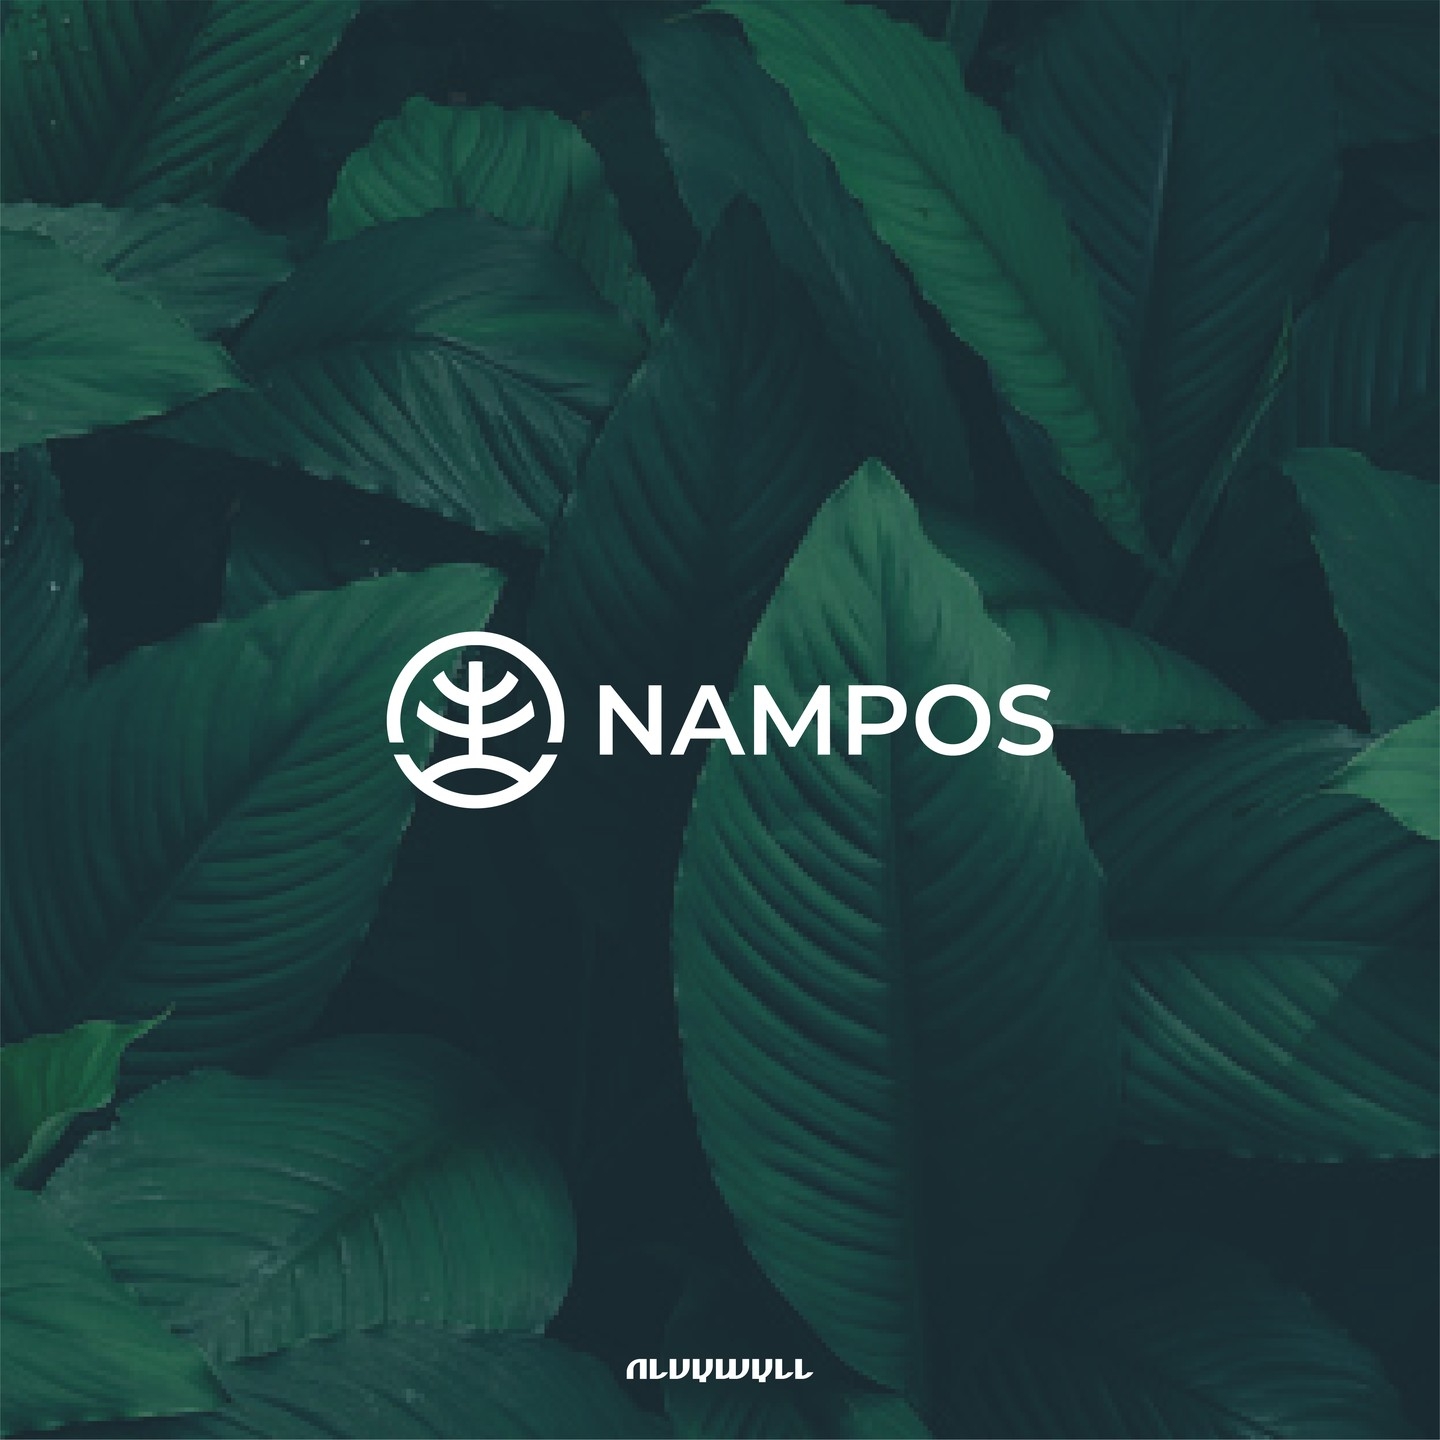 Nampos Logo Design